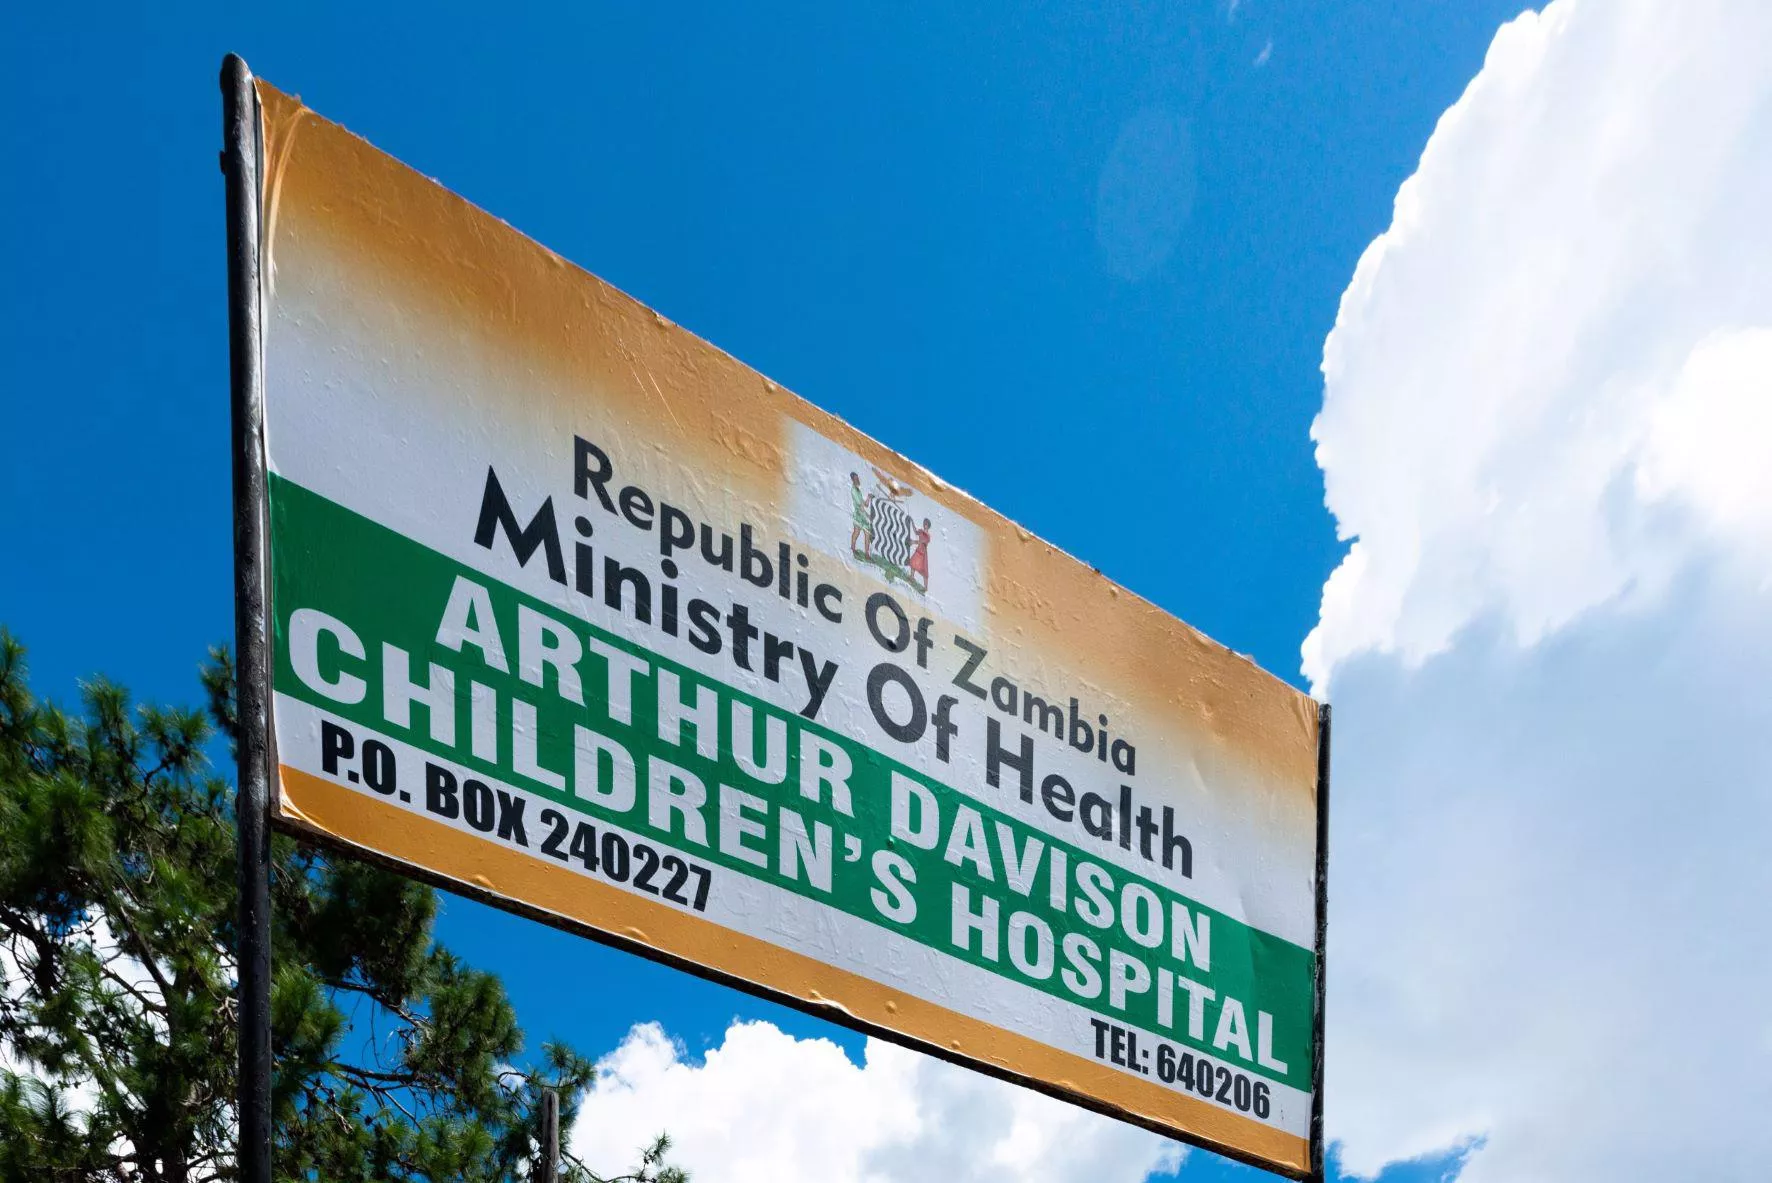 Arthur Davison children's hospital Zambia